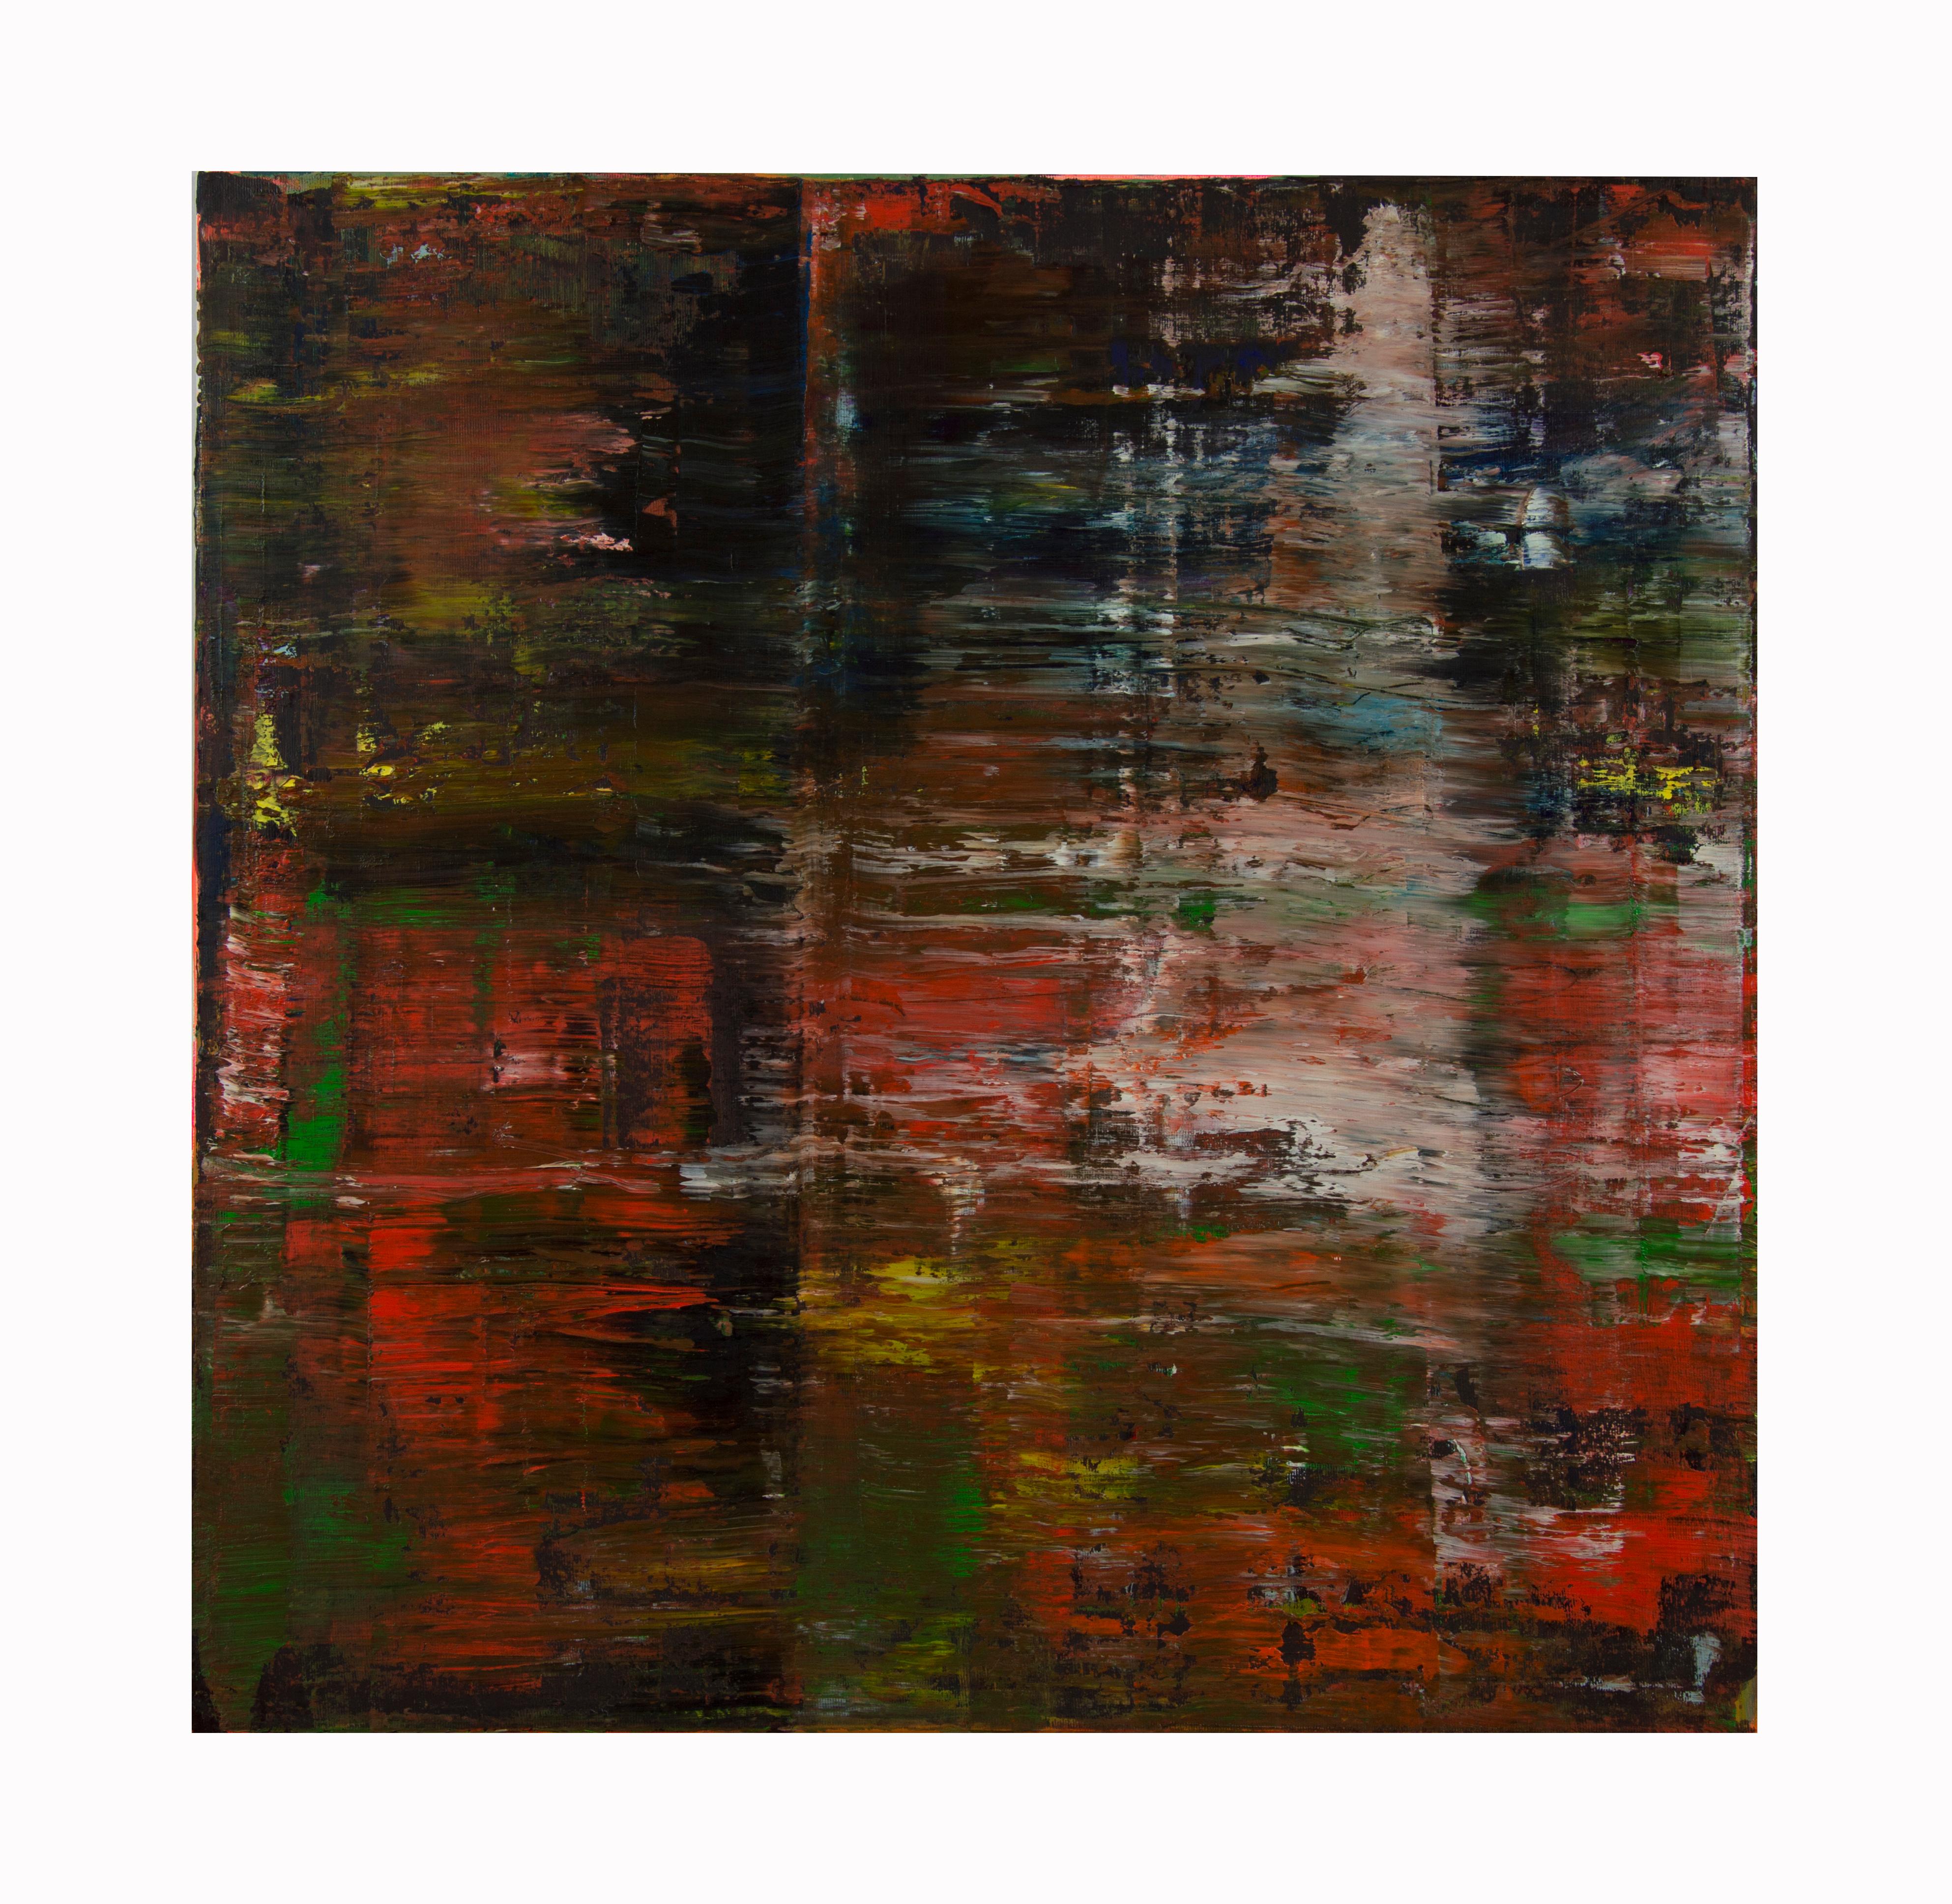 Composition arrhythmique 3 -  Peinture à l'huile abstraite expressionniste contemporaine